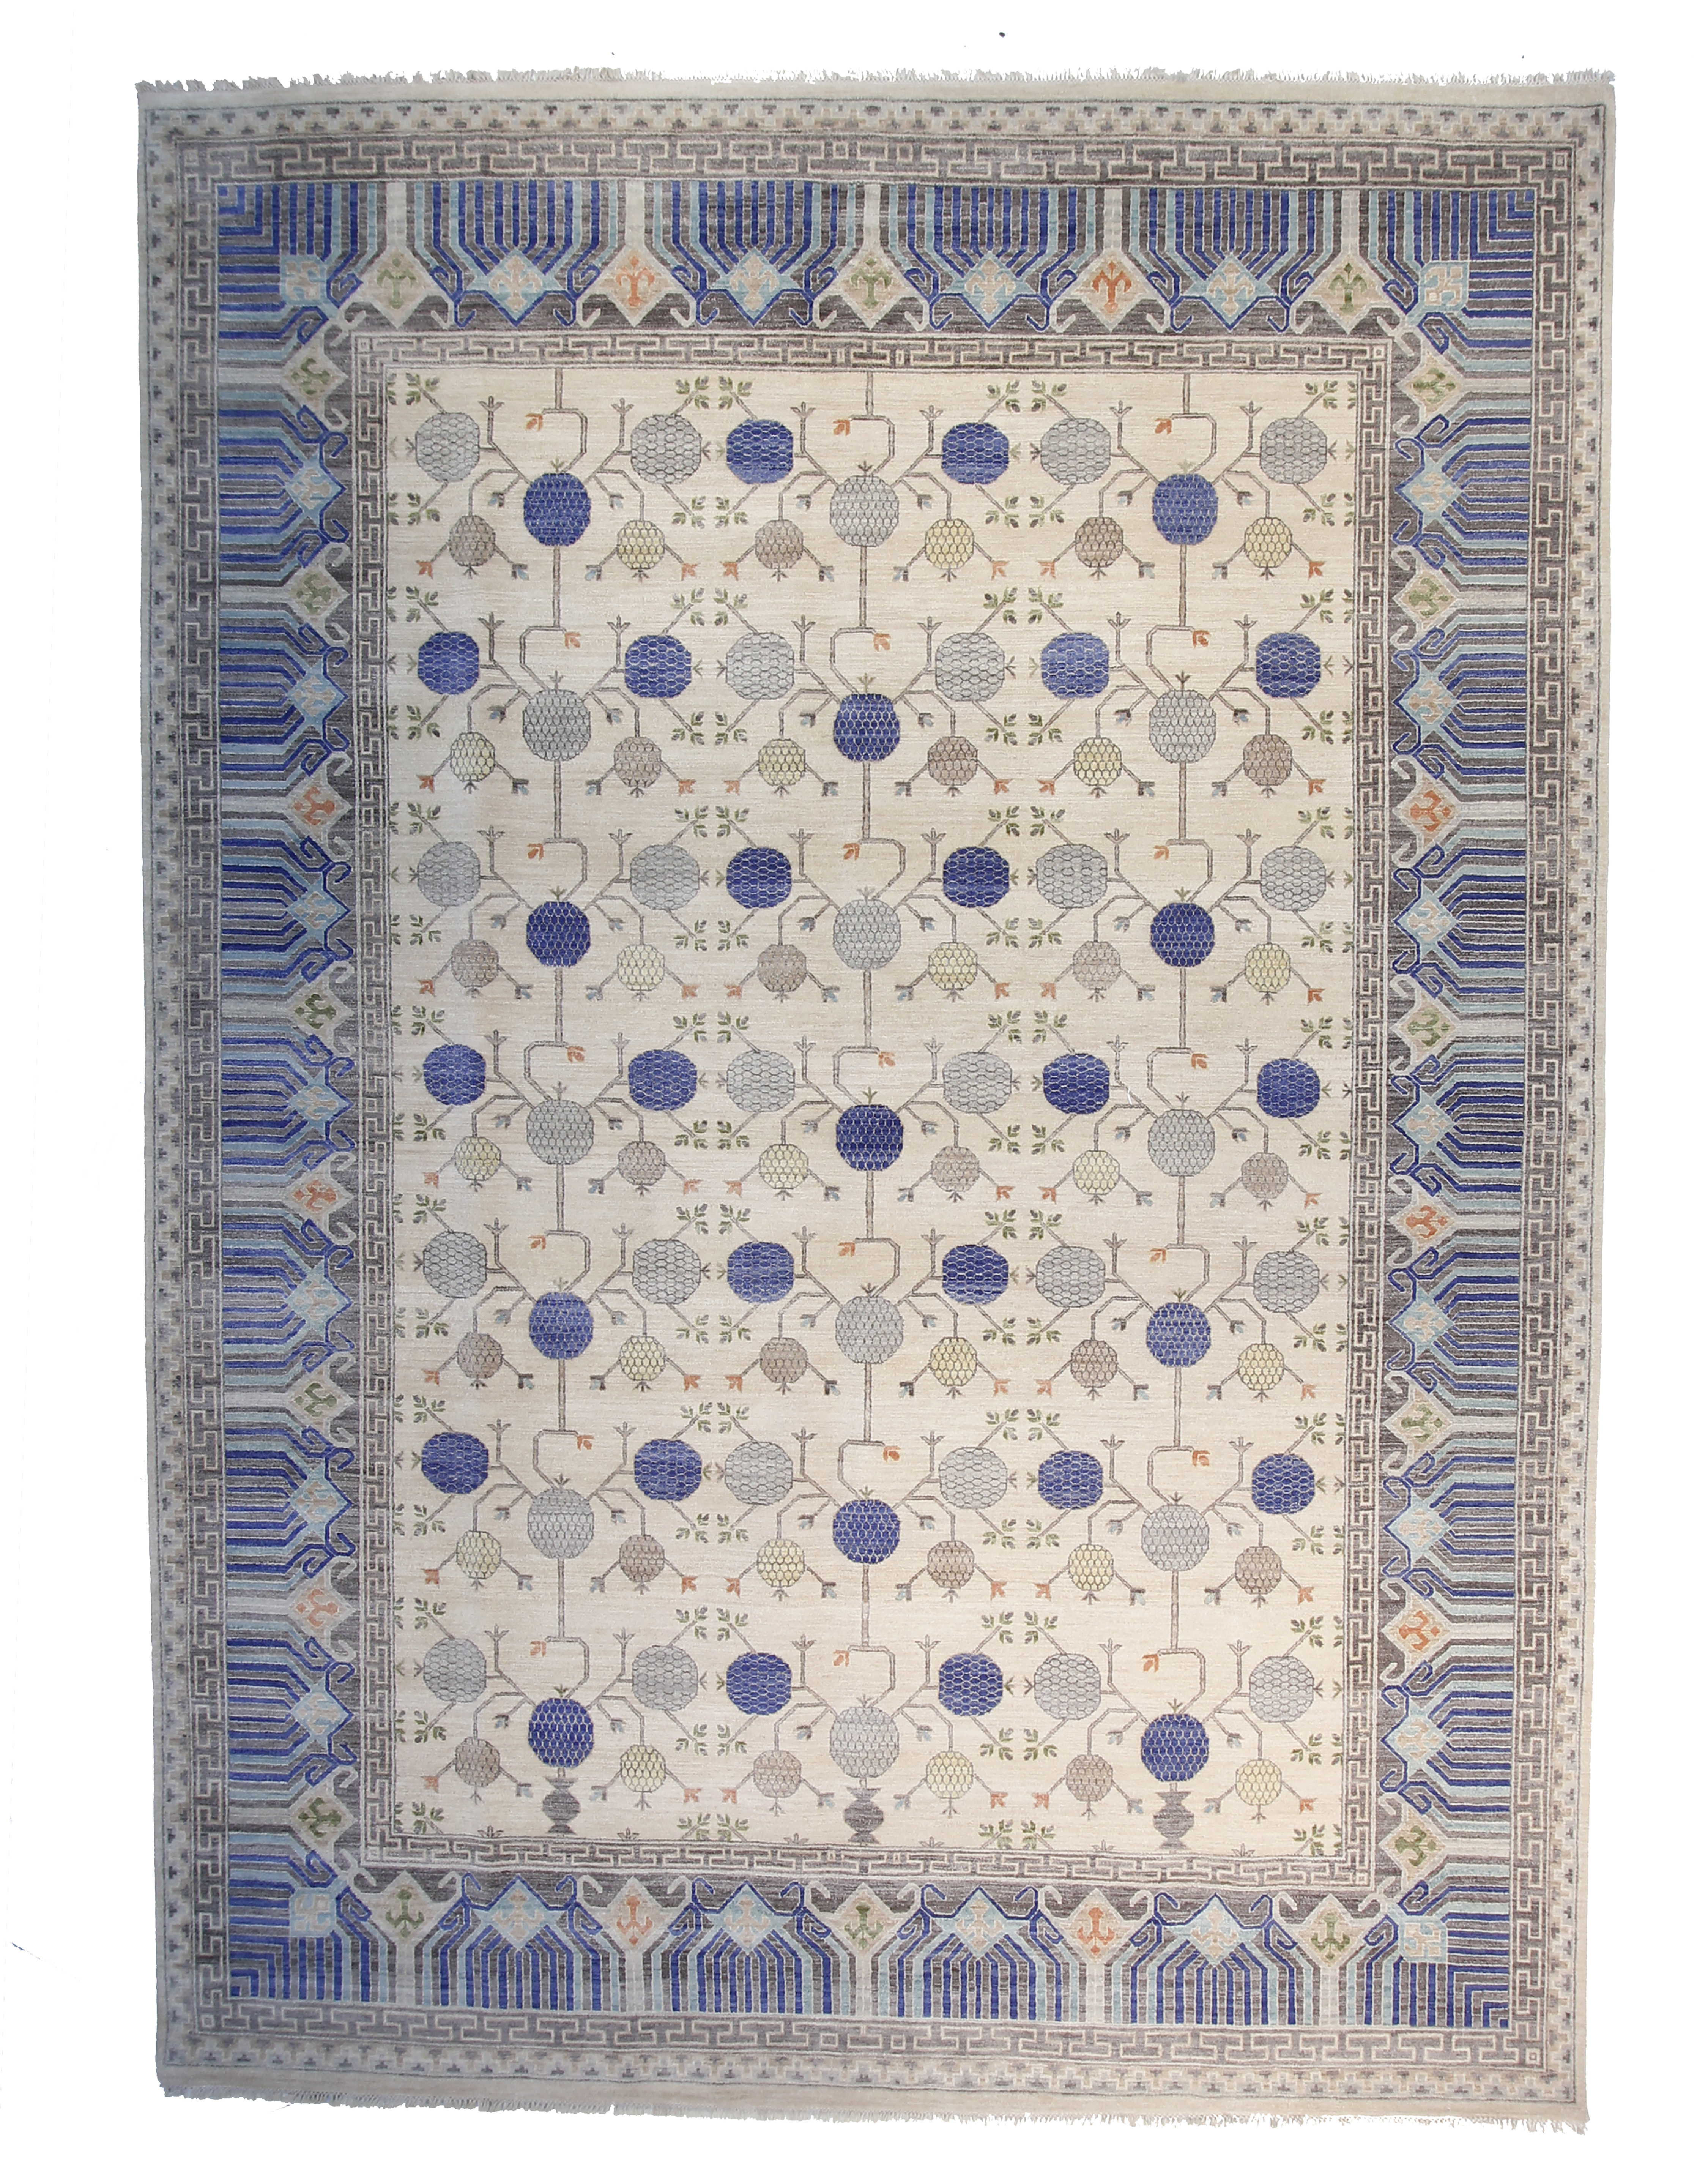 12" x 15" Khotan Rug, Ivory/Blue~P77662956